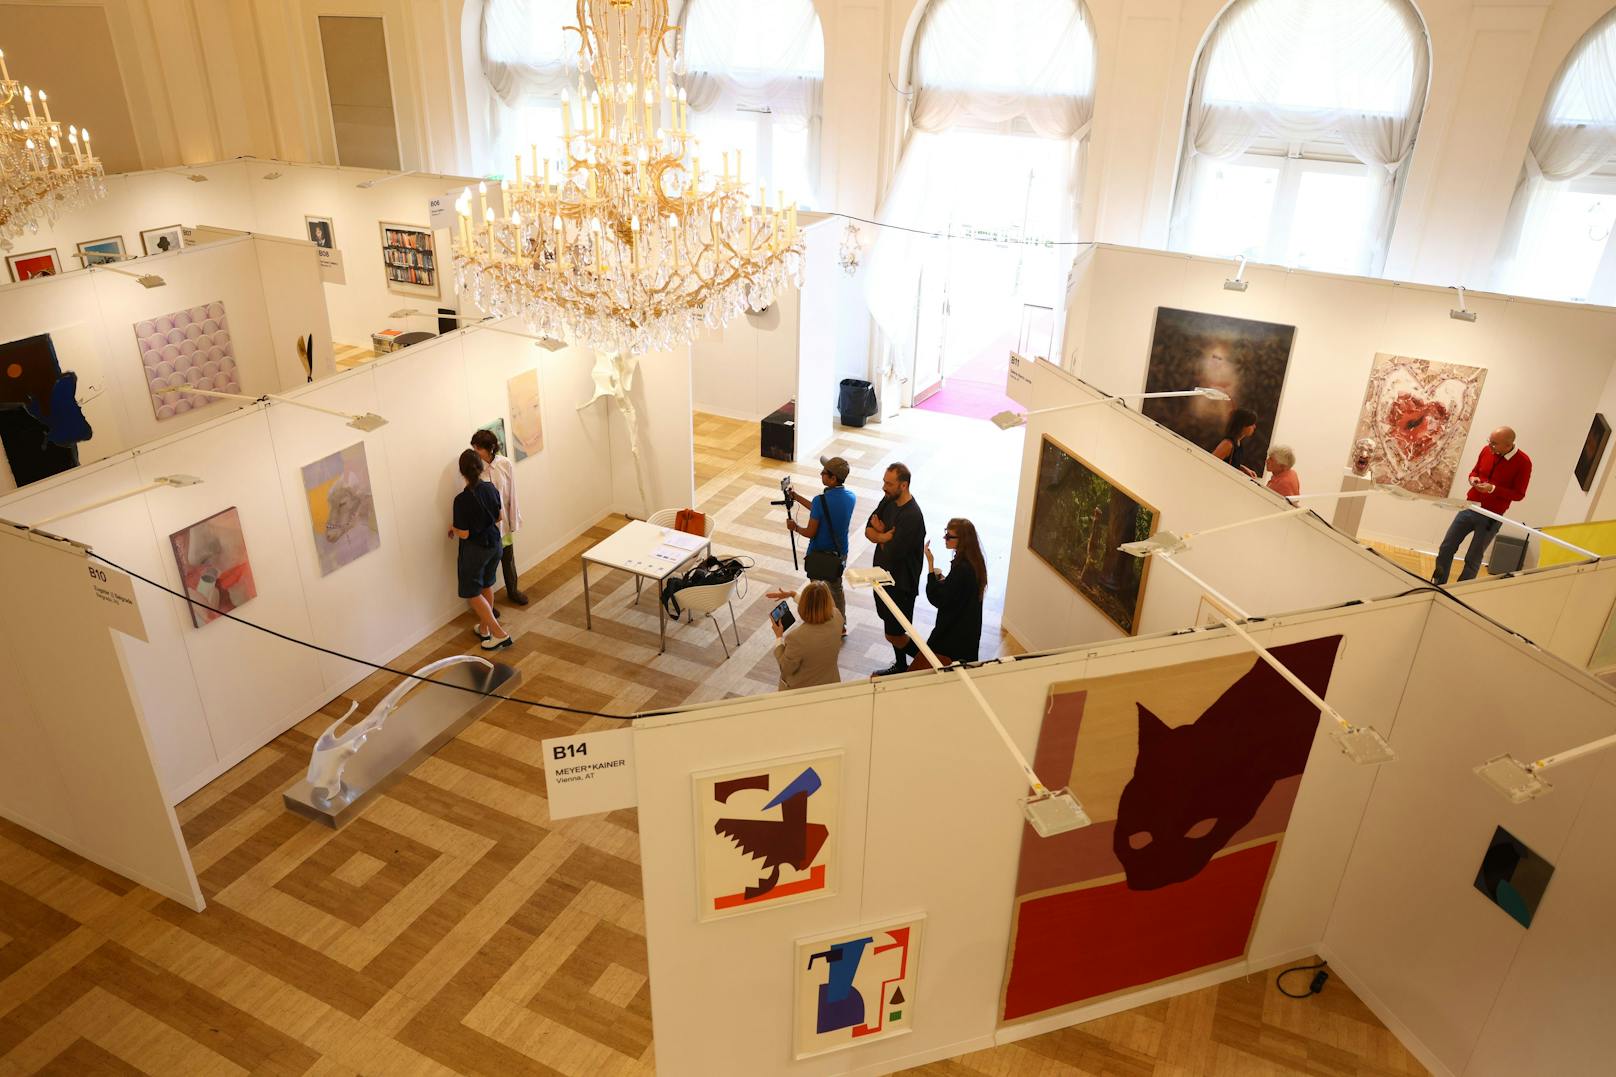 61 Galerien stellen heuer bei der viennacontemporary aus. Mehr als 120 Künstlerinnen und Künstler sind mit dabei.